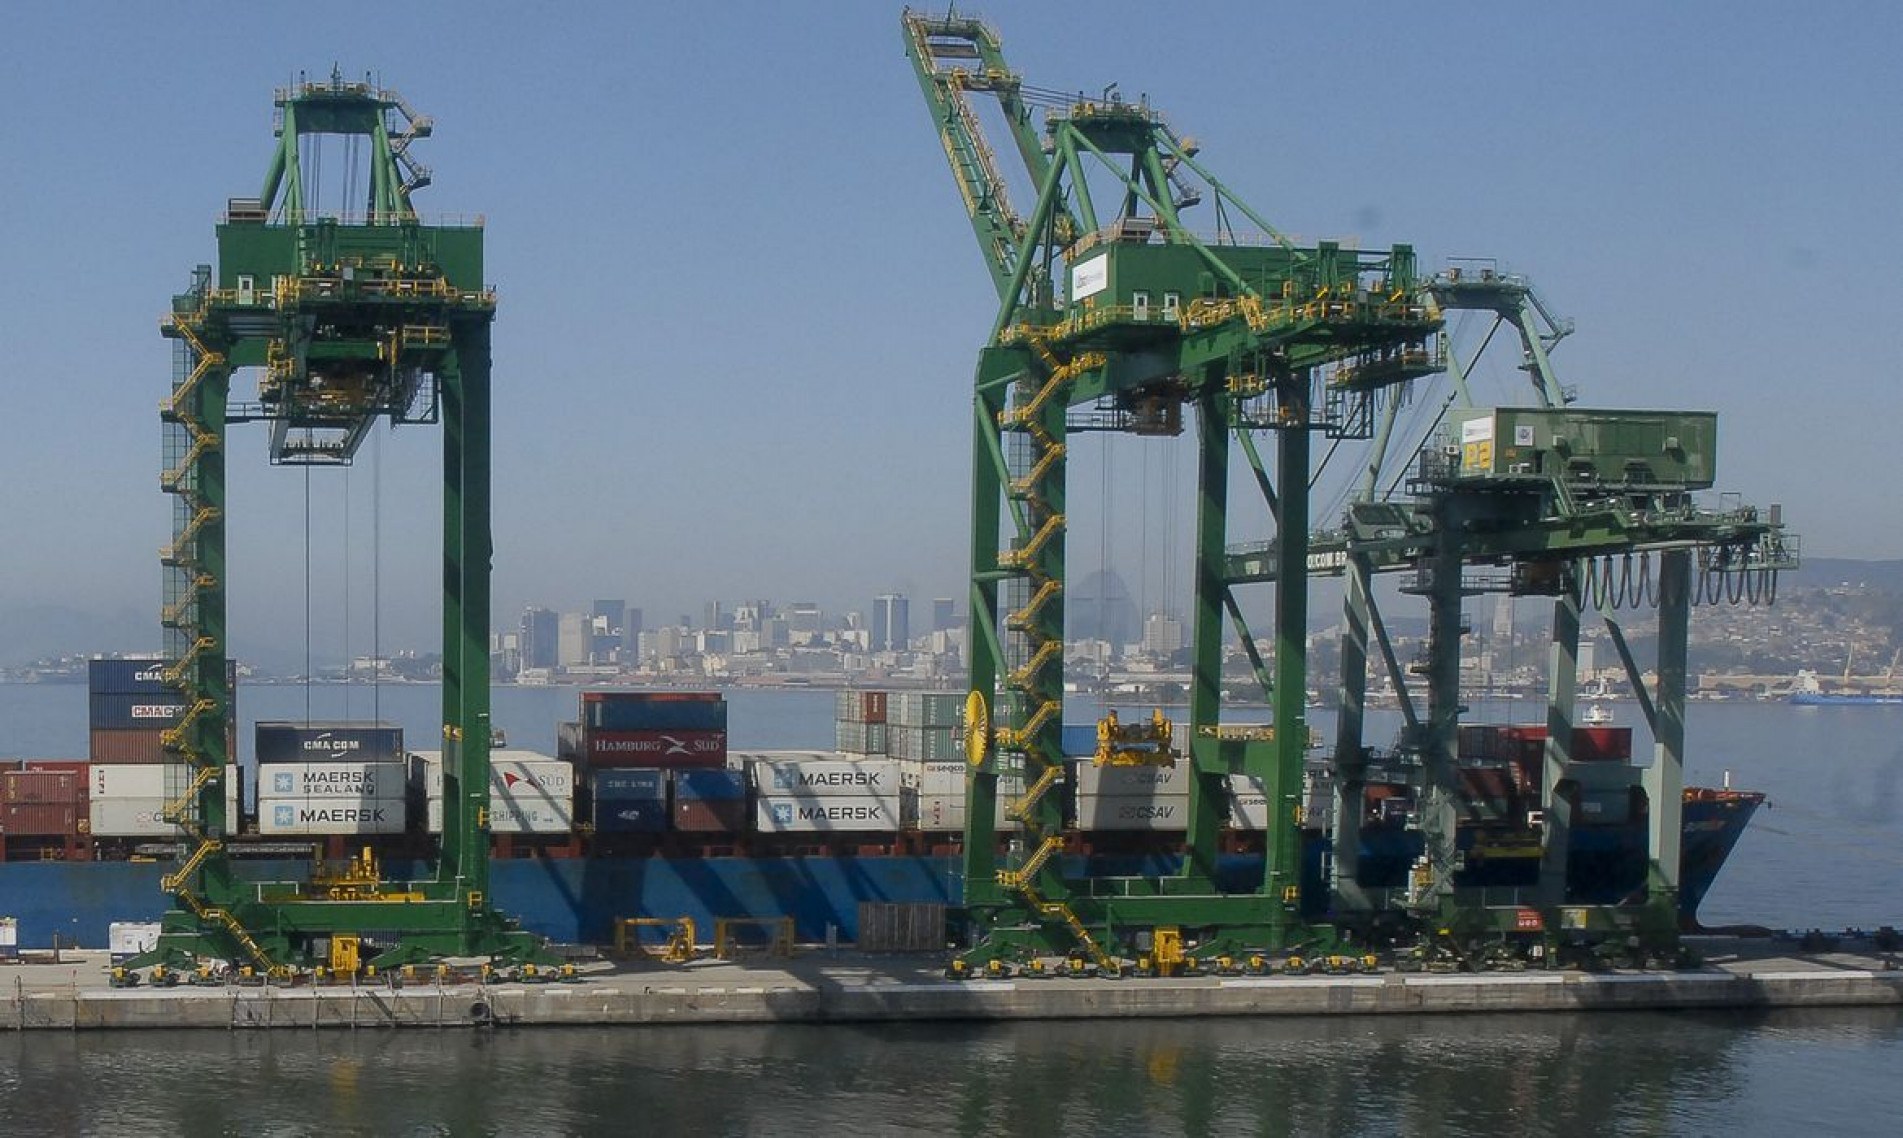  Atraca....o de navios no Ca..s do Porto do Rio de Janeiro, guindaste, container.
    